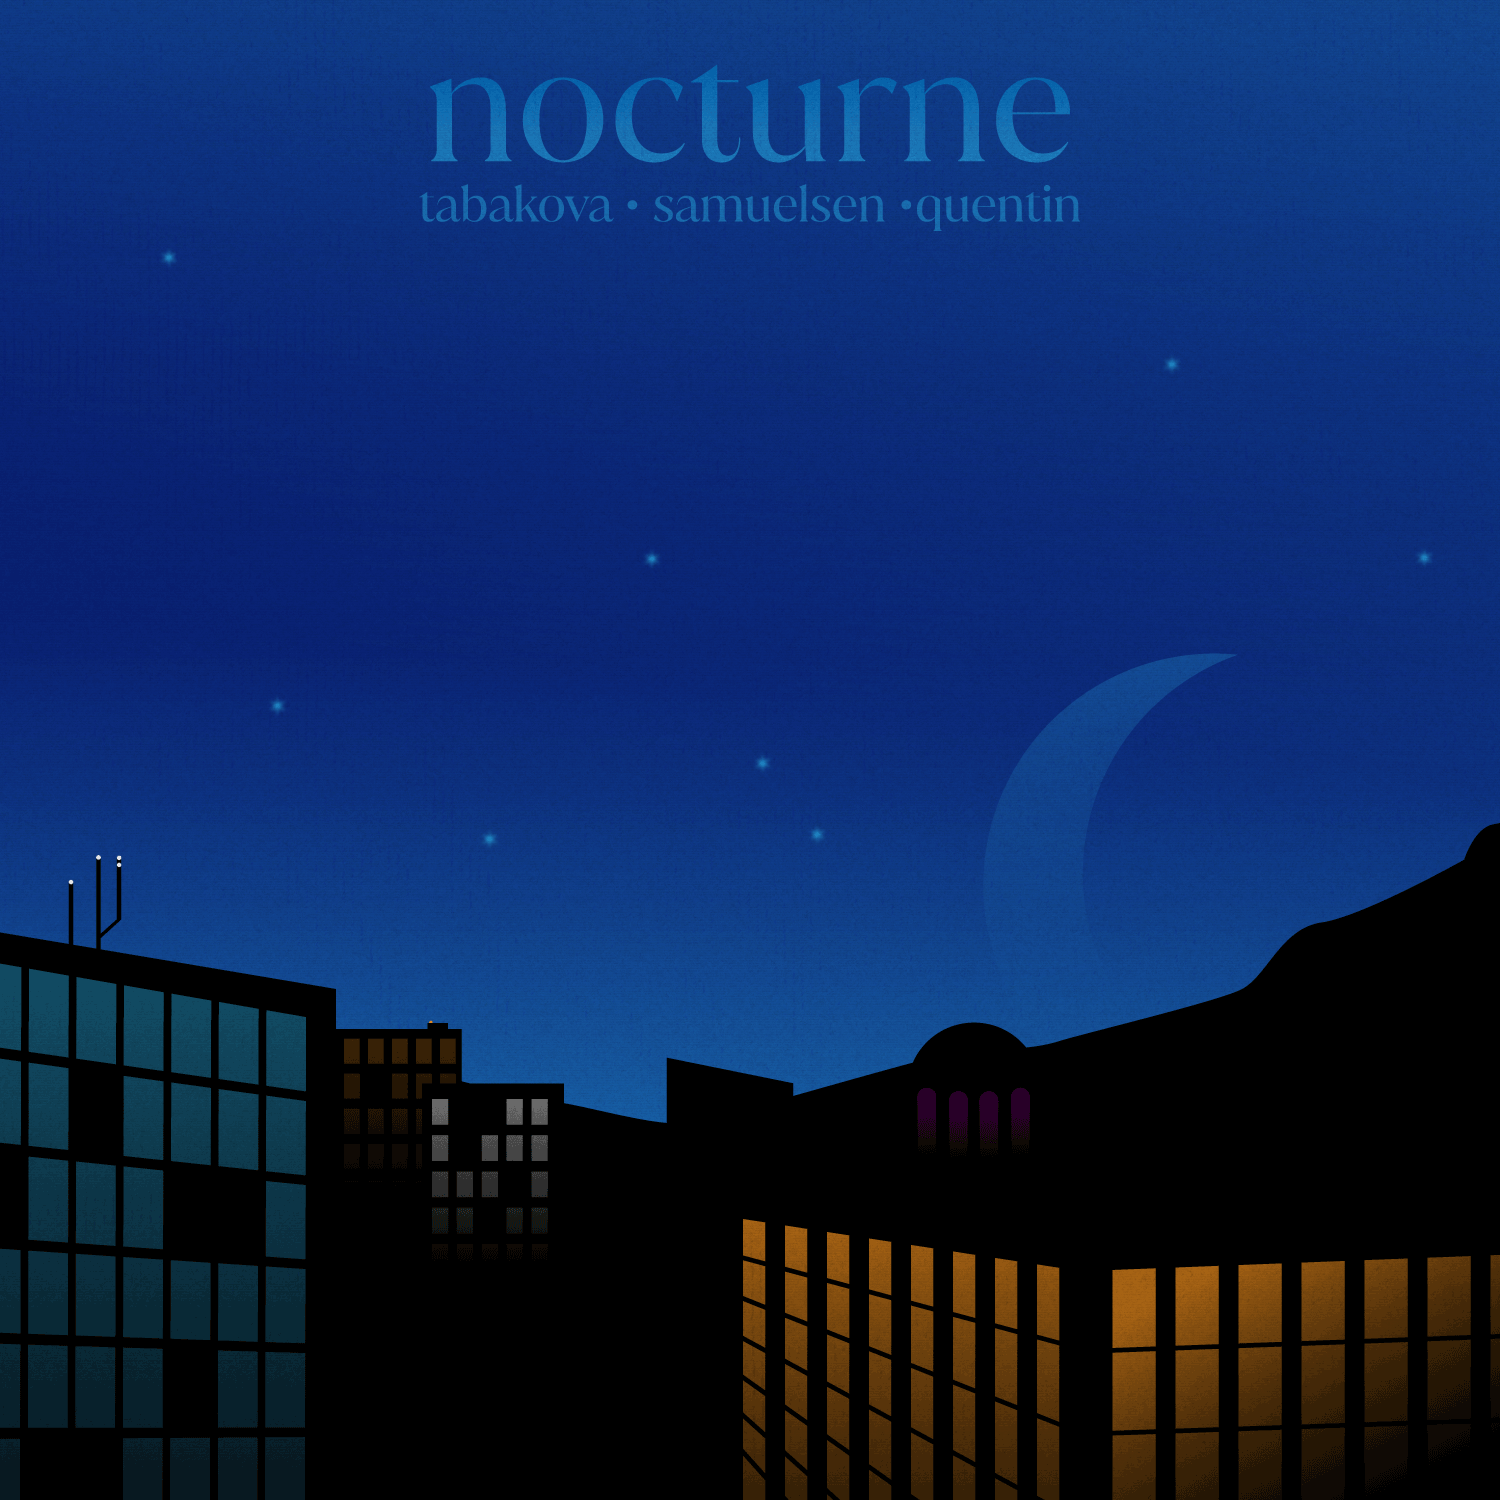 Nocturne Inspired Illustration